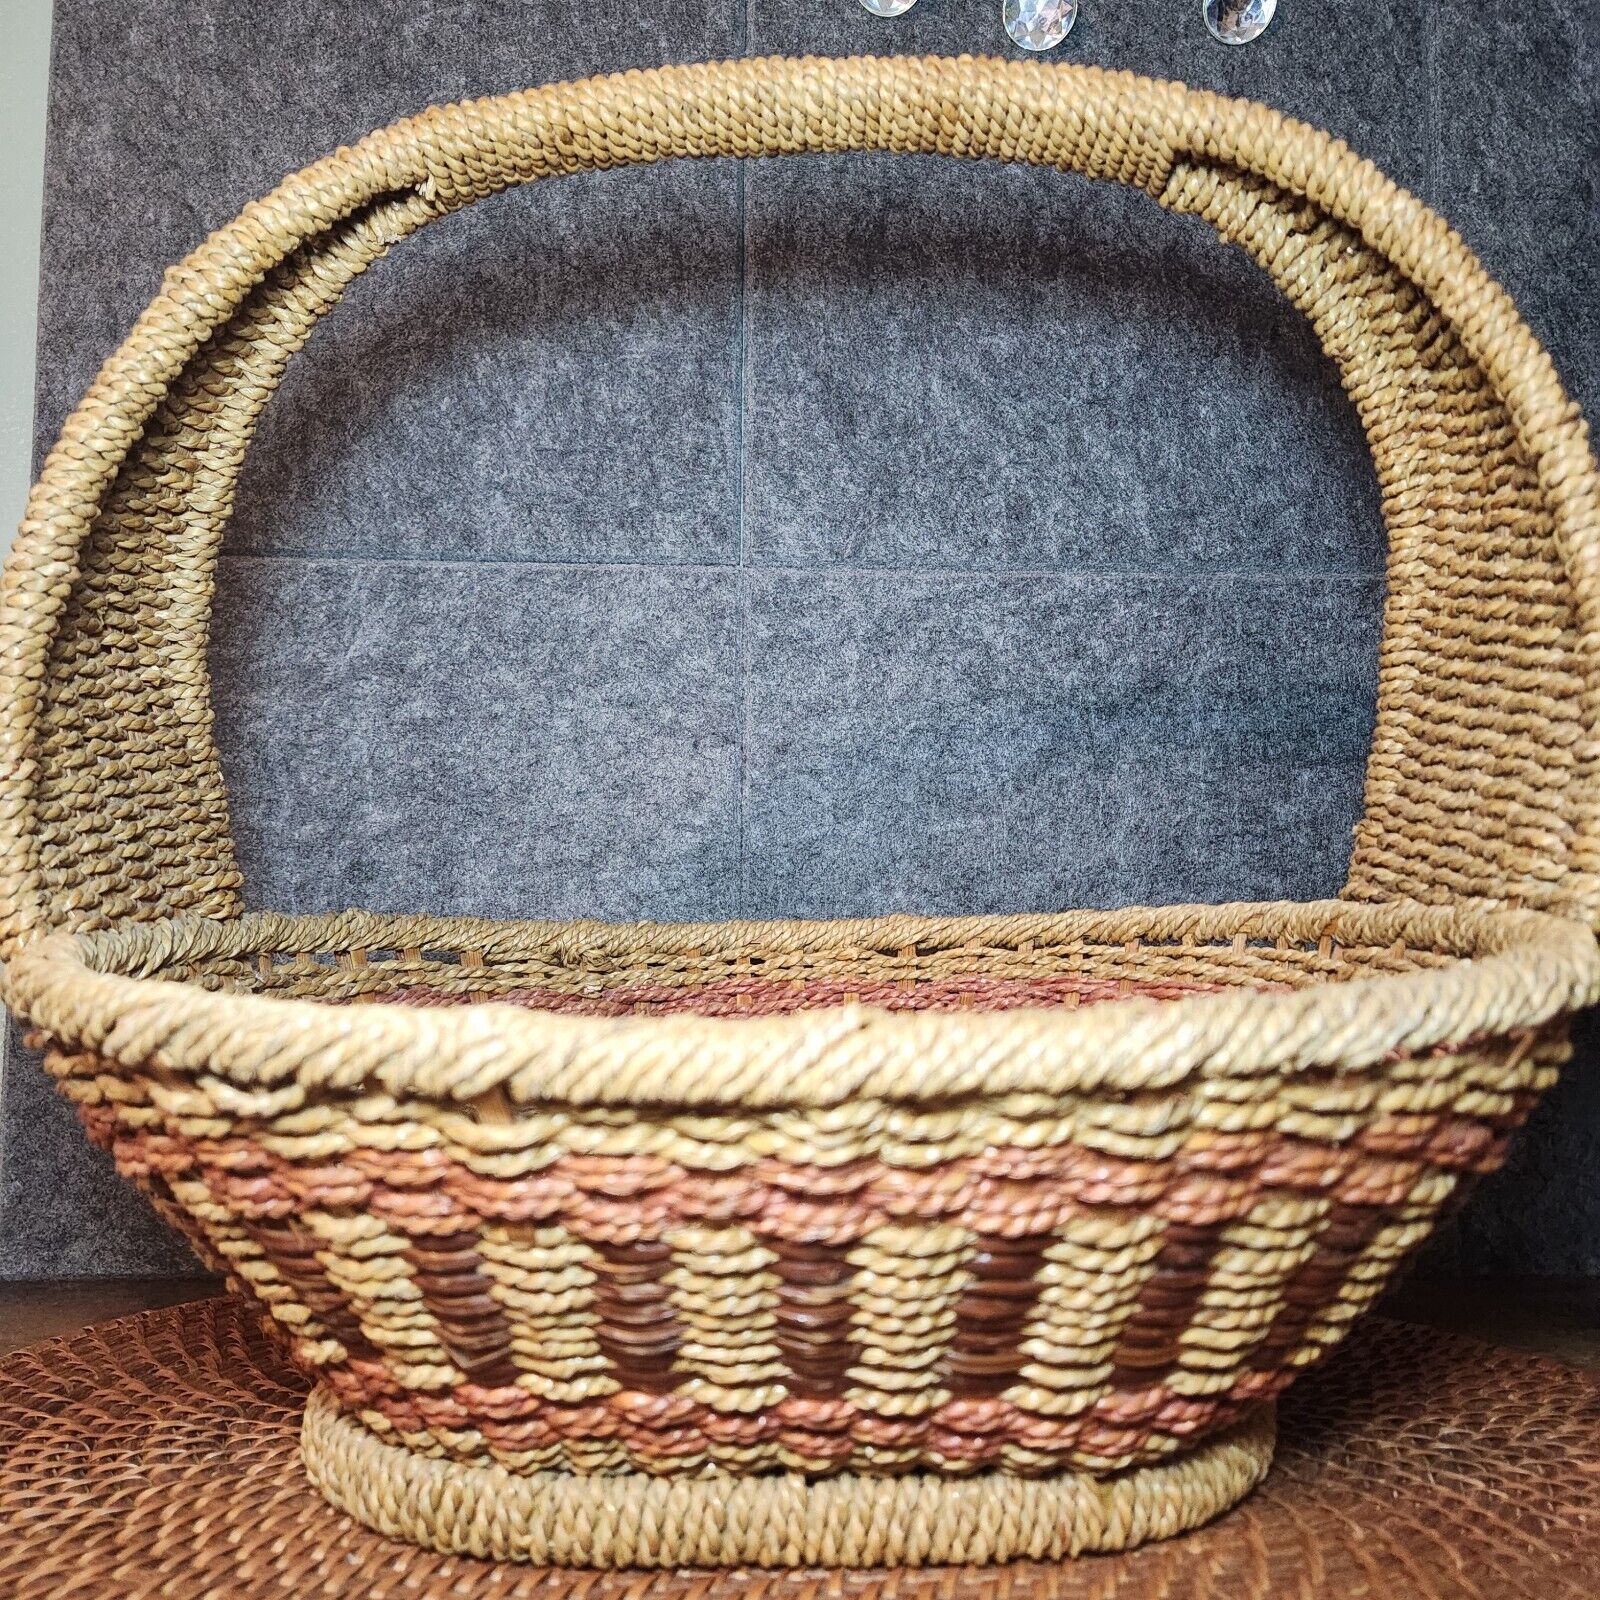 Beautiful Handmade Large Wood/Rope Grass Weave Basket Rustic Natural